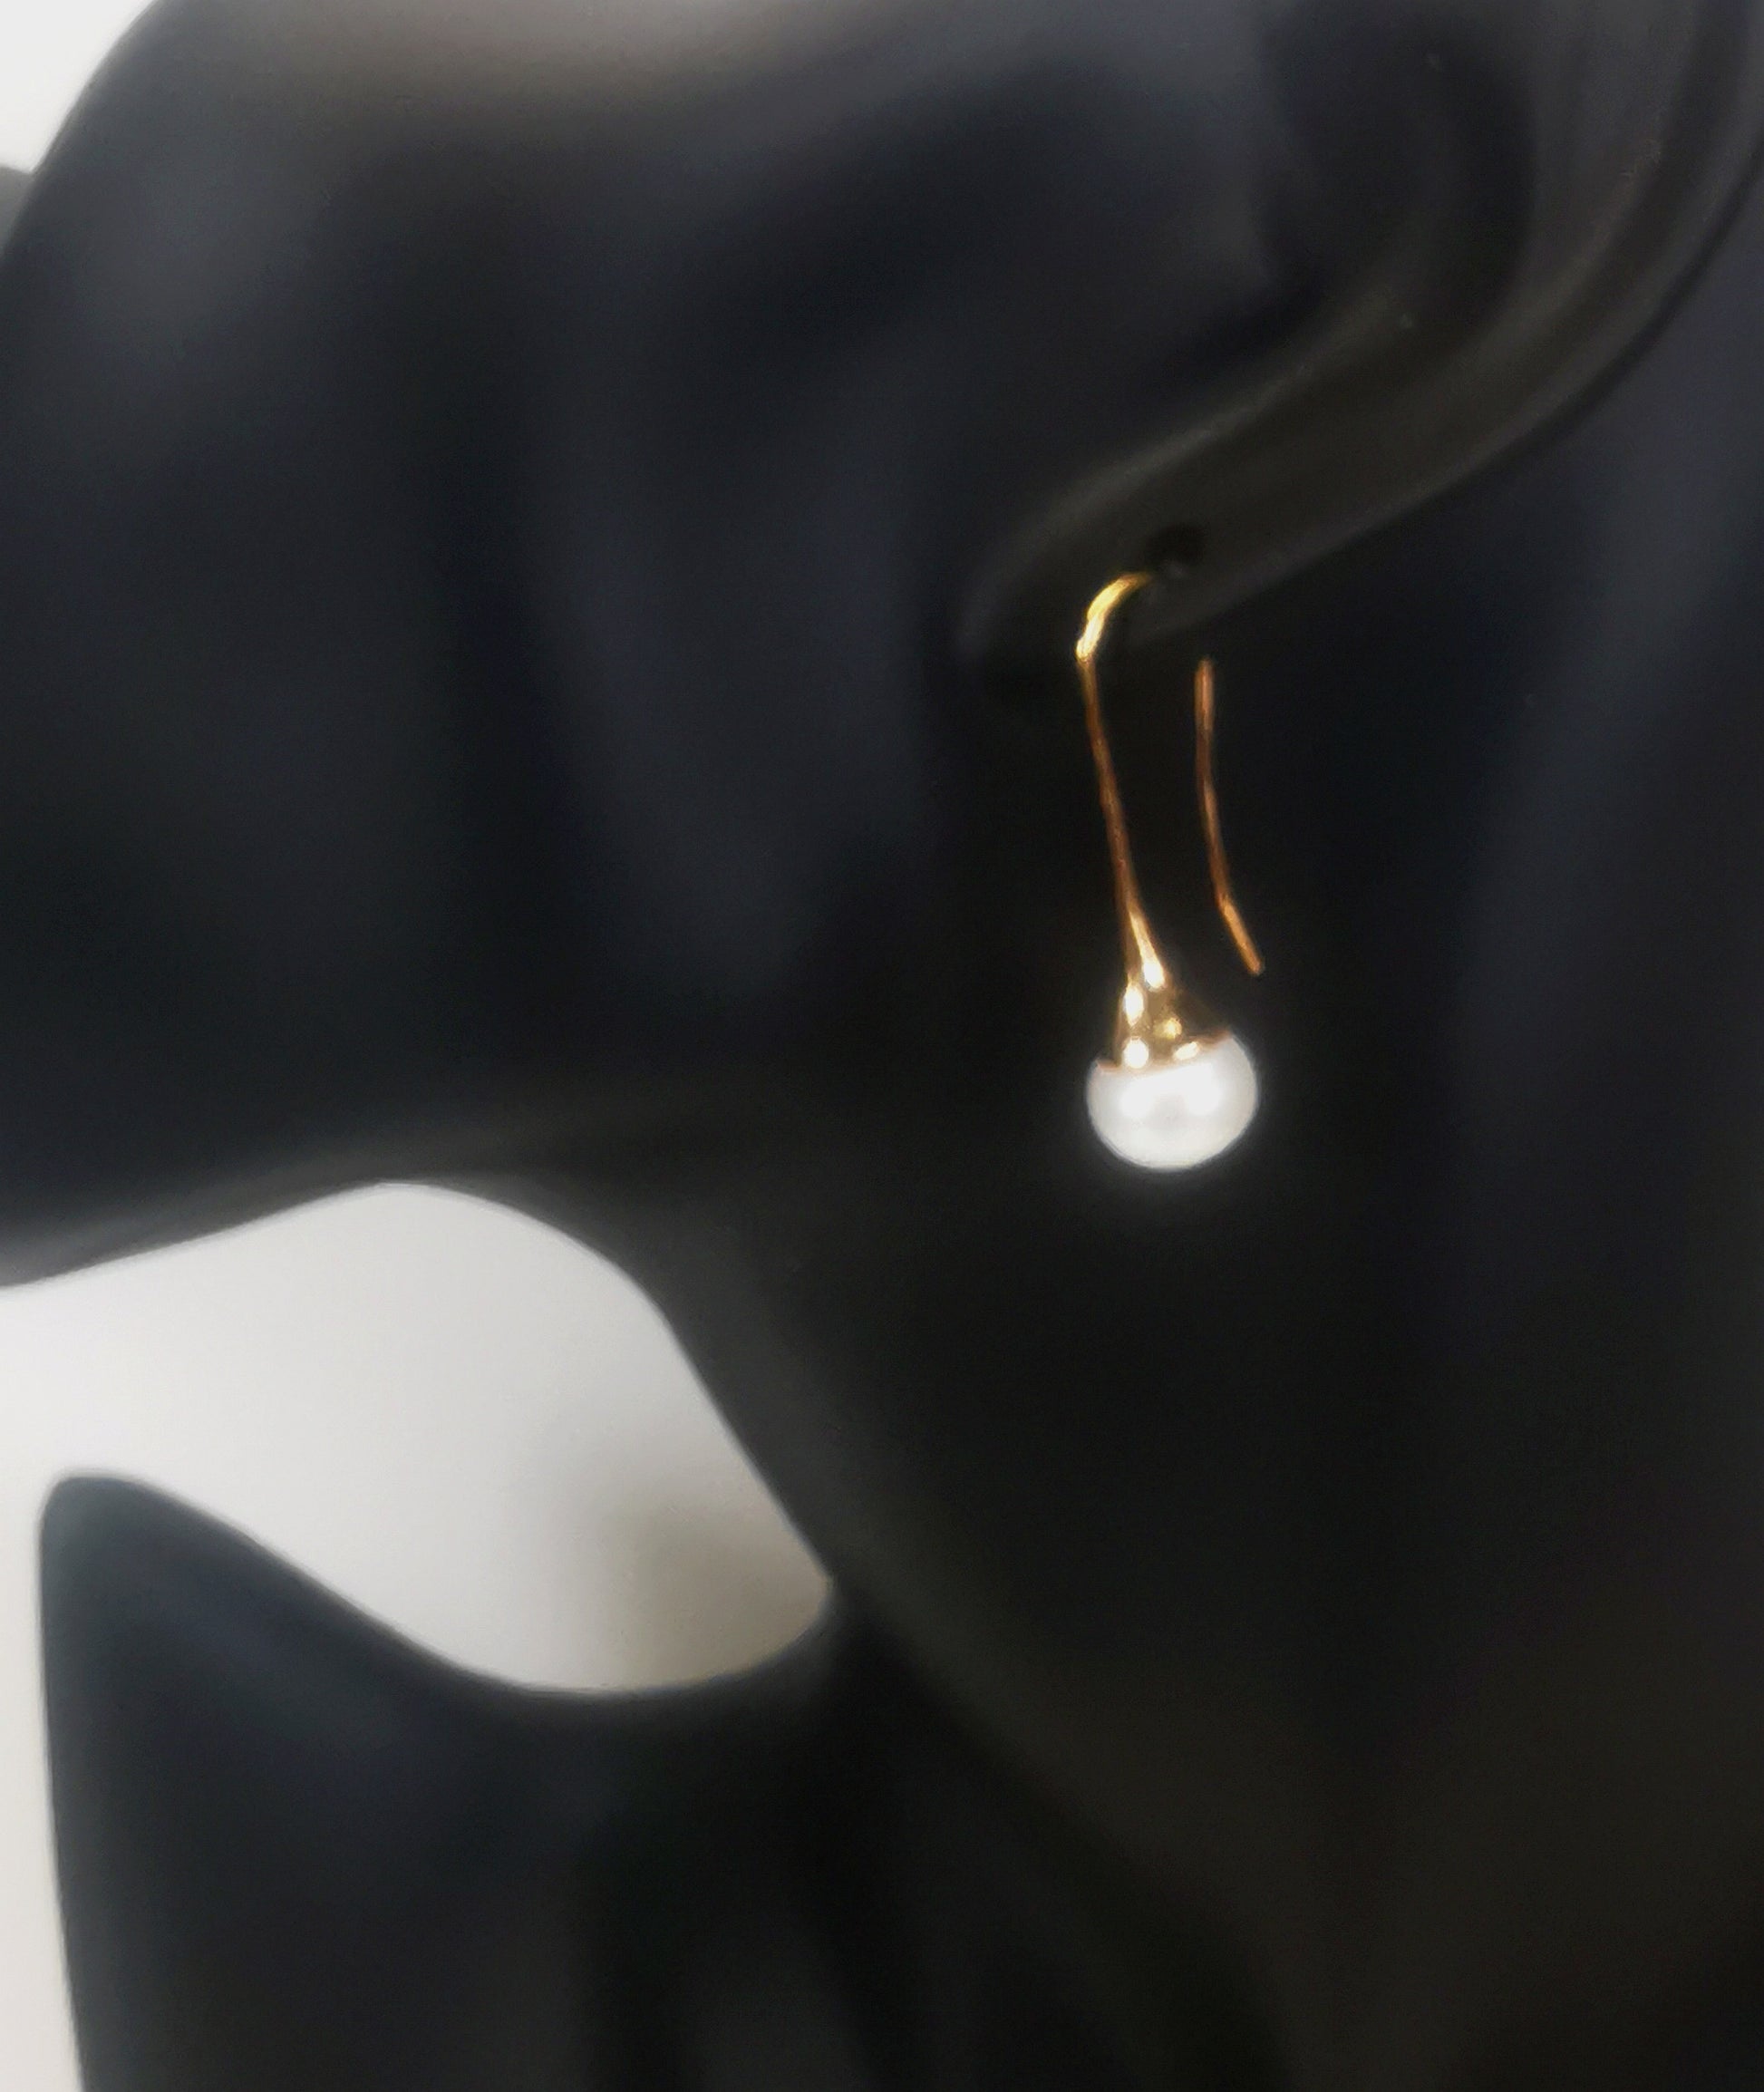 Boucles d'oreilles perles de culture blanches 9mm sur pendants longs plaqués or. représentées par une boucle accrochée à l'oreilles d'un mannequin buste noir. Vue de coté.